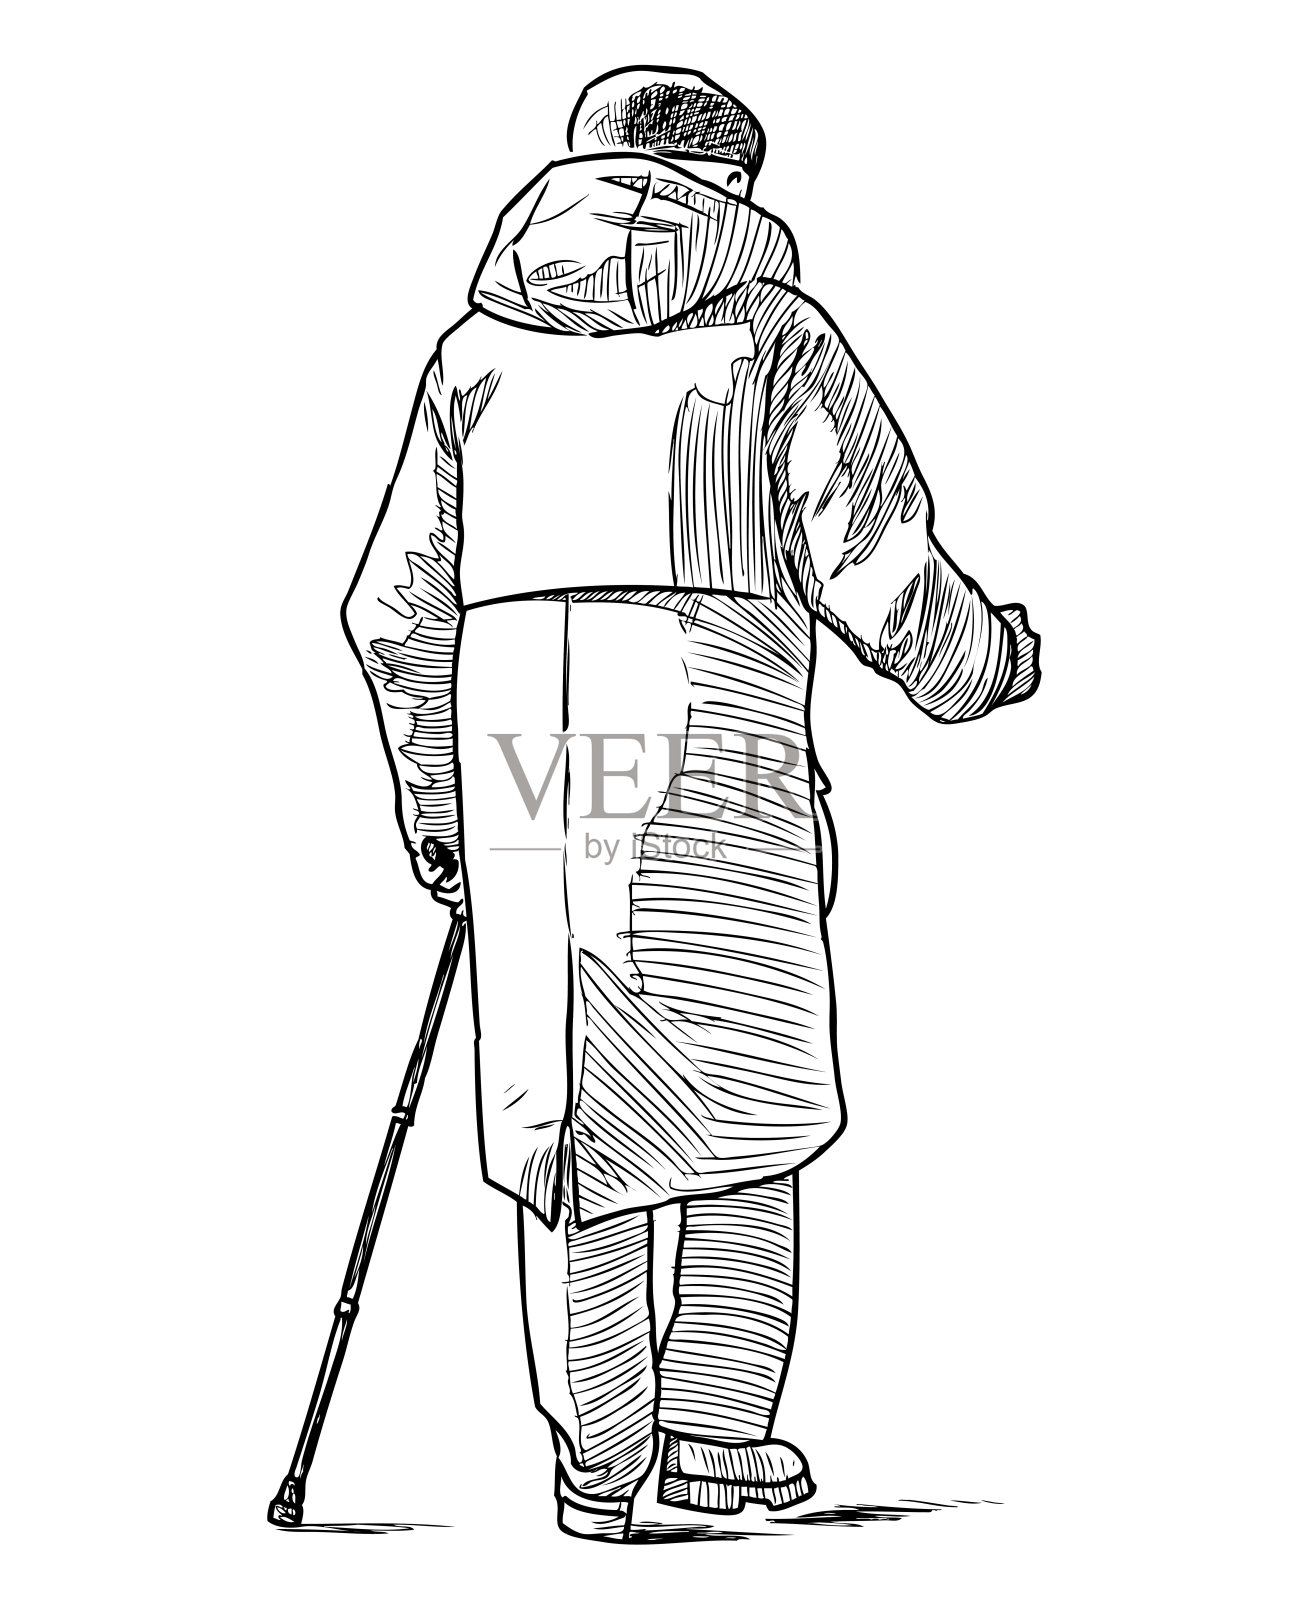 一个老人拄着拐杖走在街上的素描插画图片素材